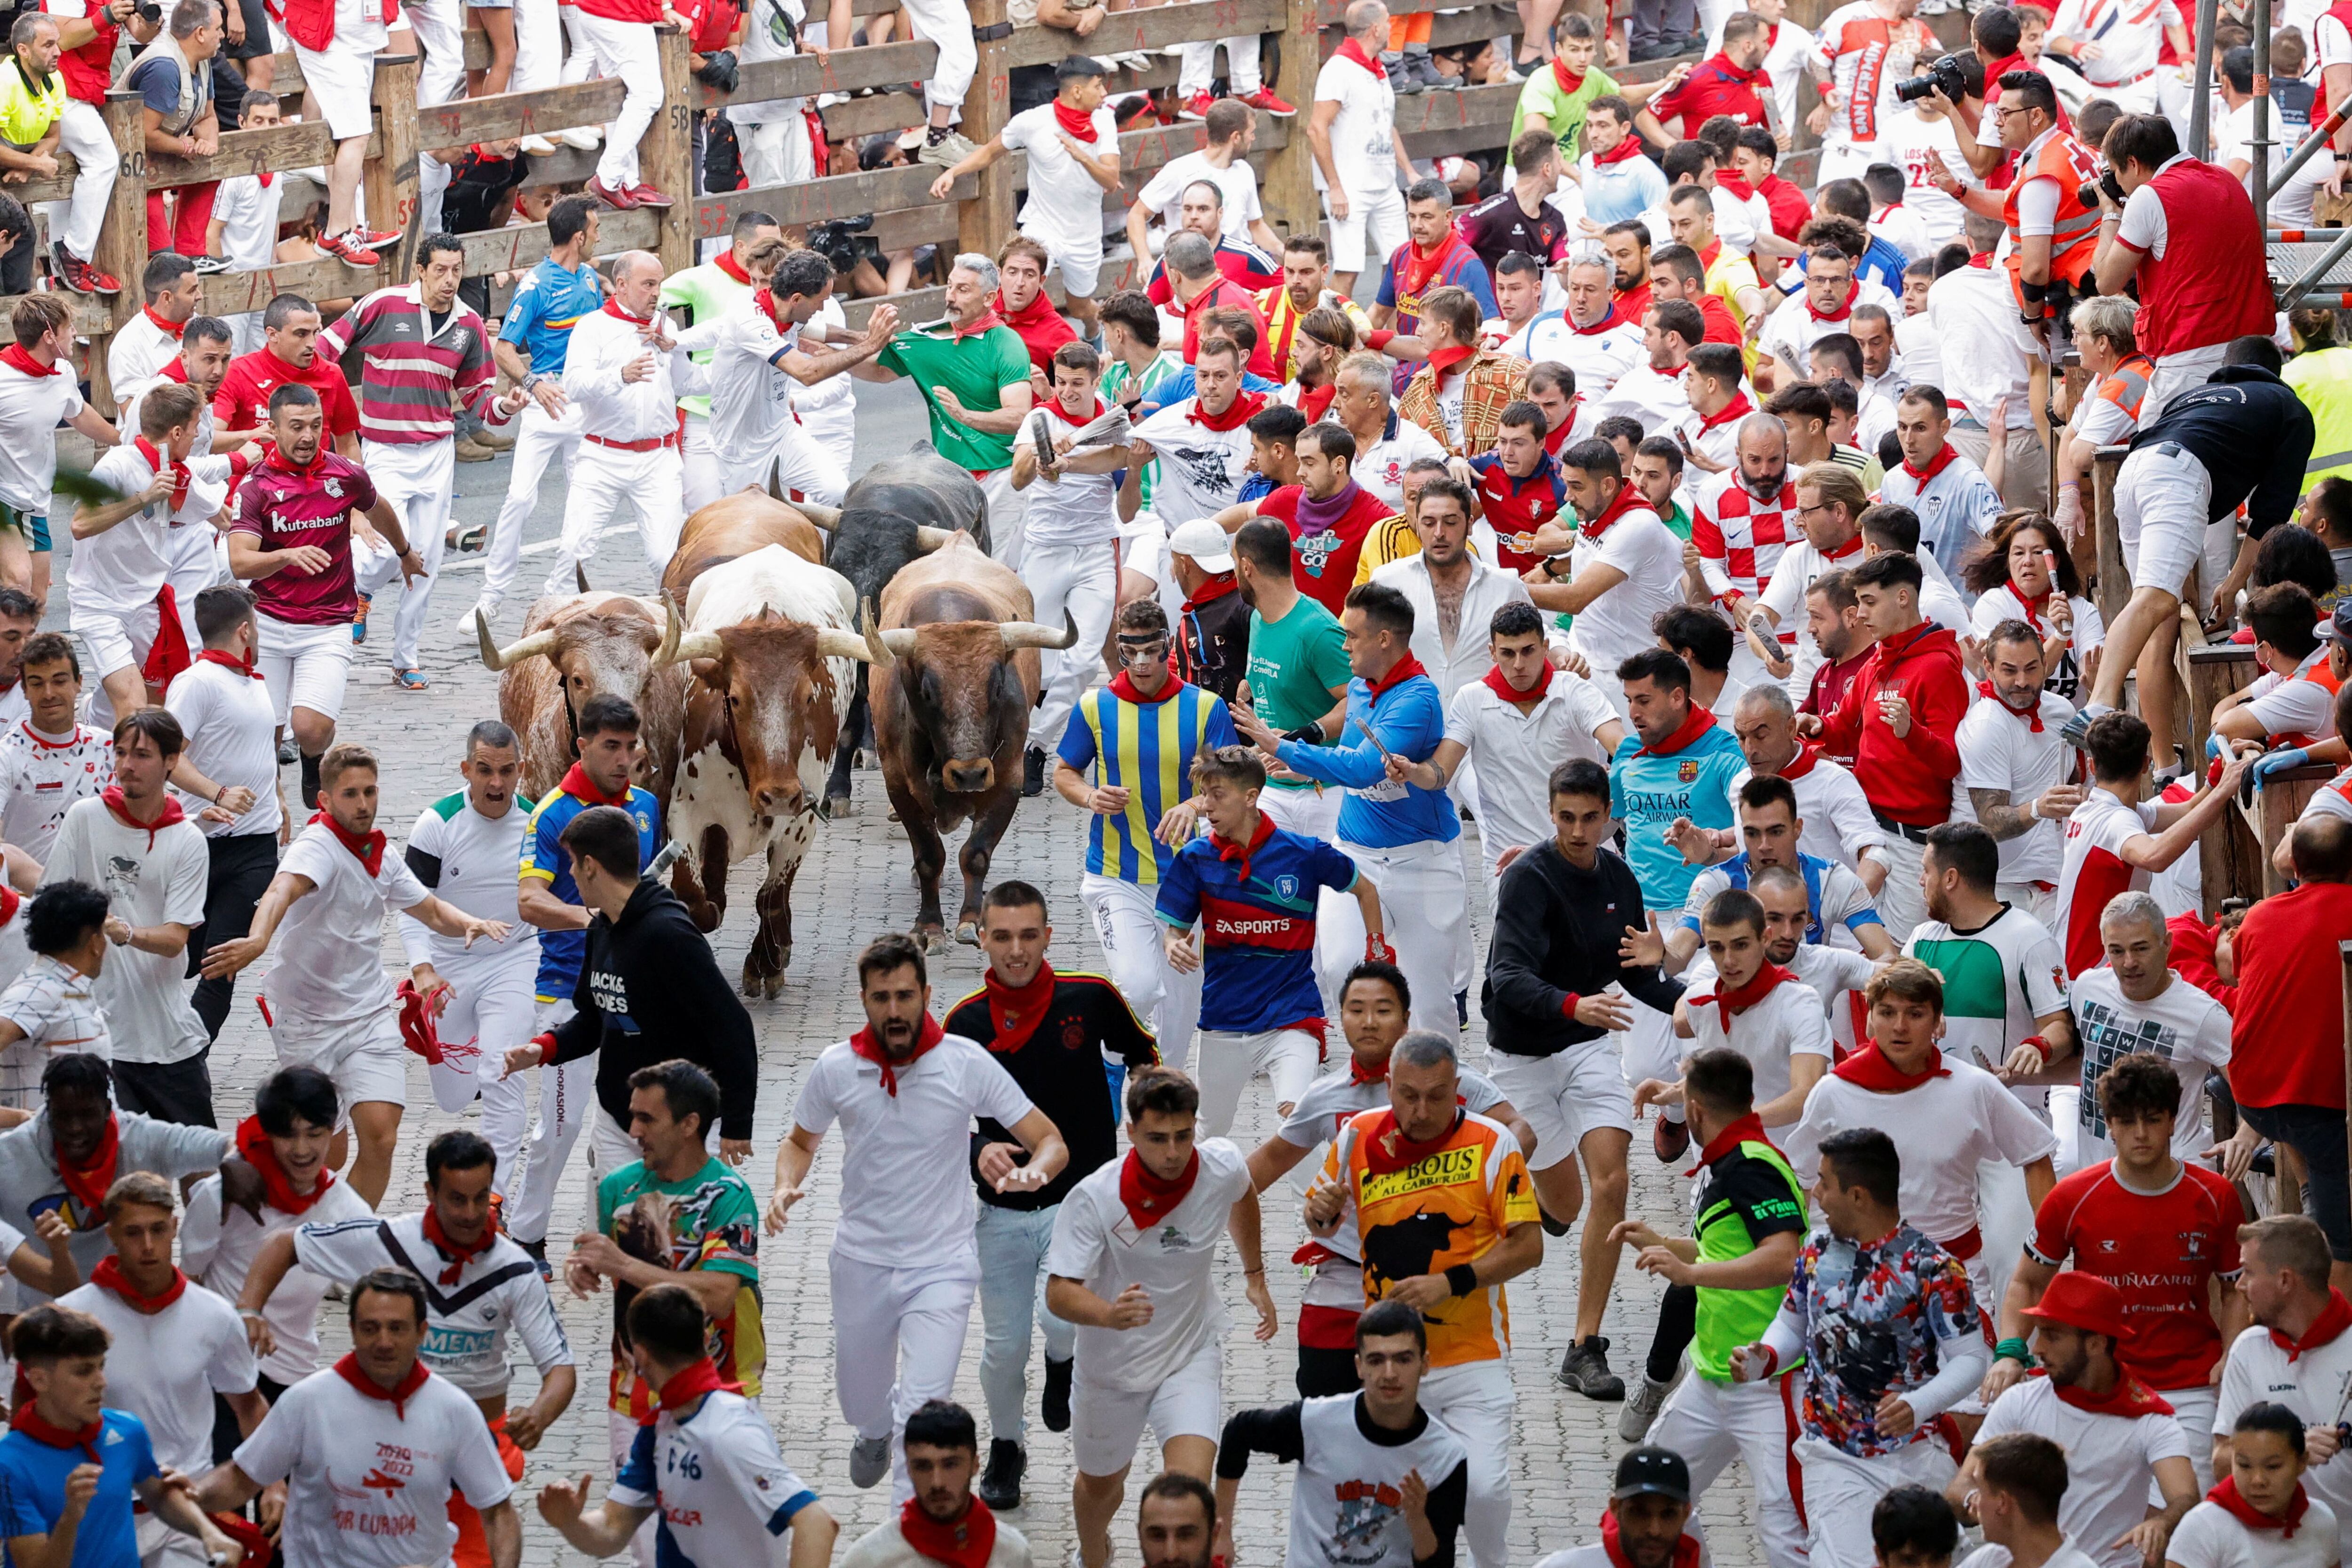 Las fiestas de San Fermín 2022 llegan a su fin este jueves con el octavo encierro, en el que los toros de la ganadería Miura han perseguido a cientos de corredores por las calles de Pamplona.